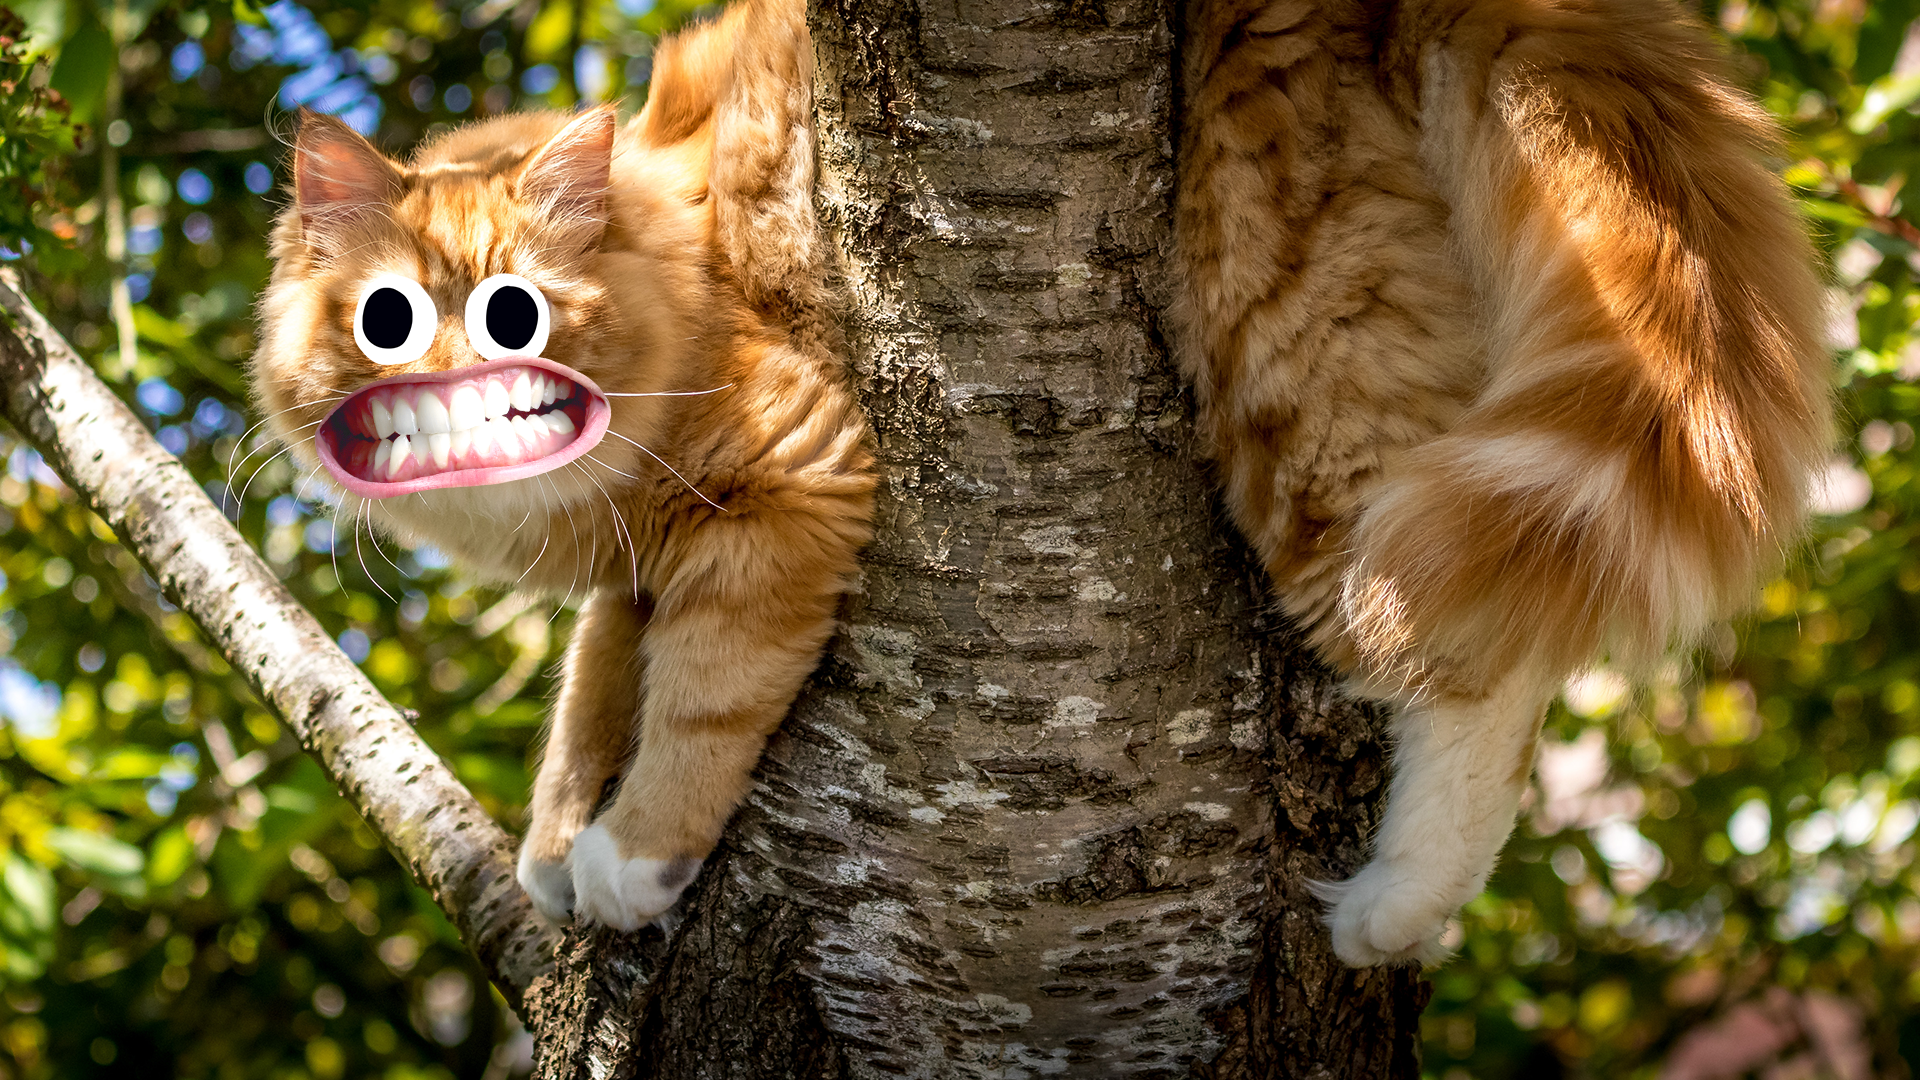 Goofy cat in a tree